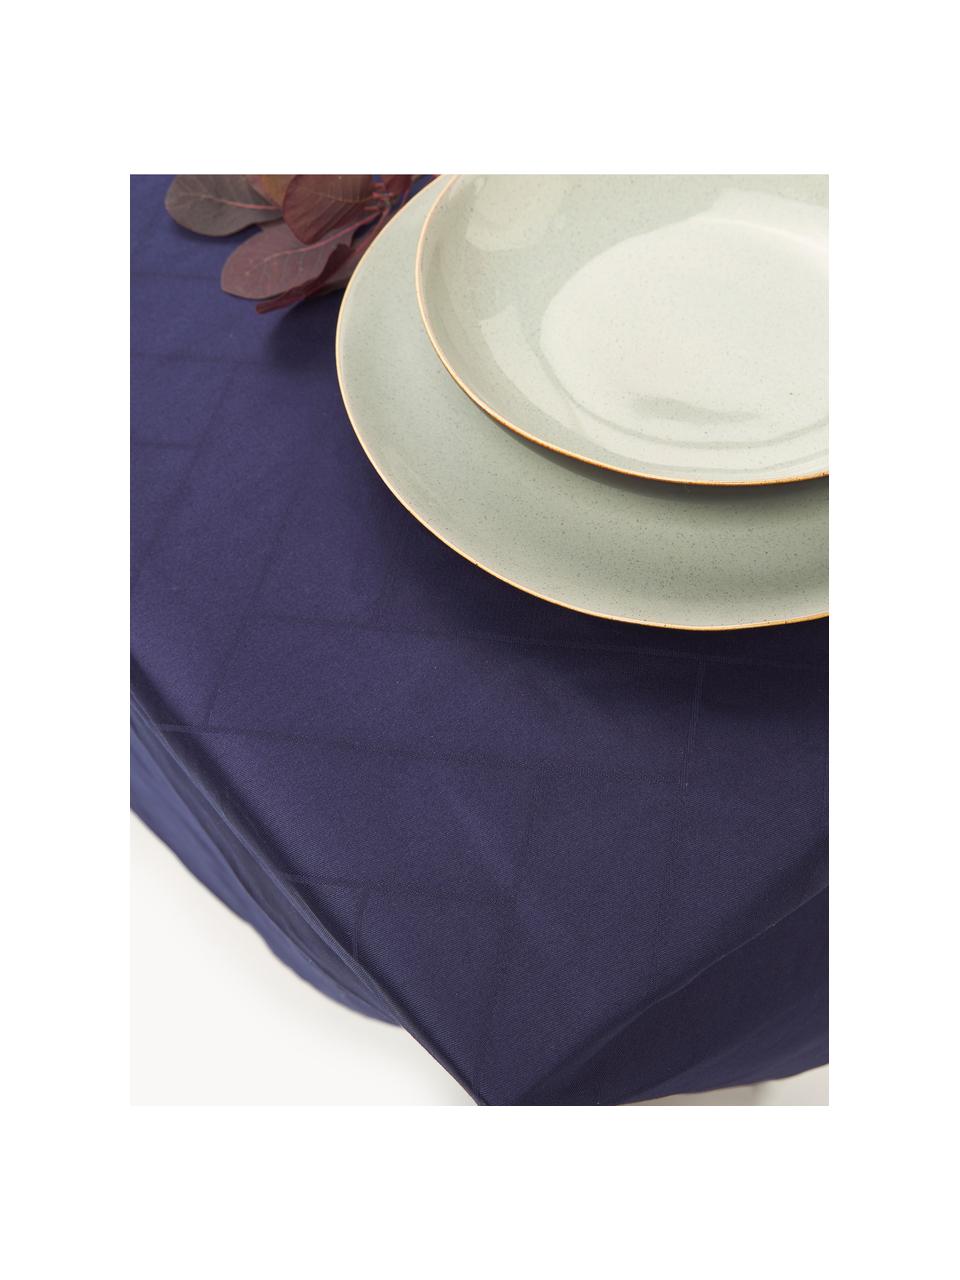 Mantel Tiles, tamaños diferentes, 100% algodón, Azul oscuro, De 6 a 8 comensales (An 140 x L 270 cm)